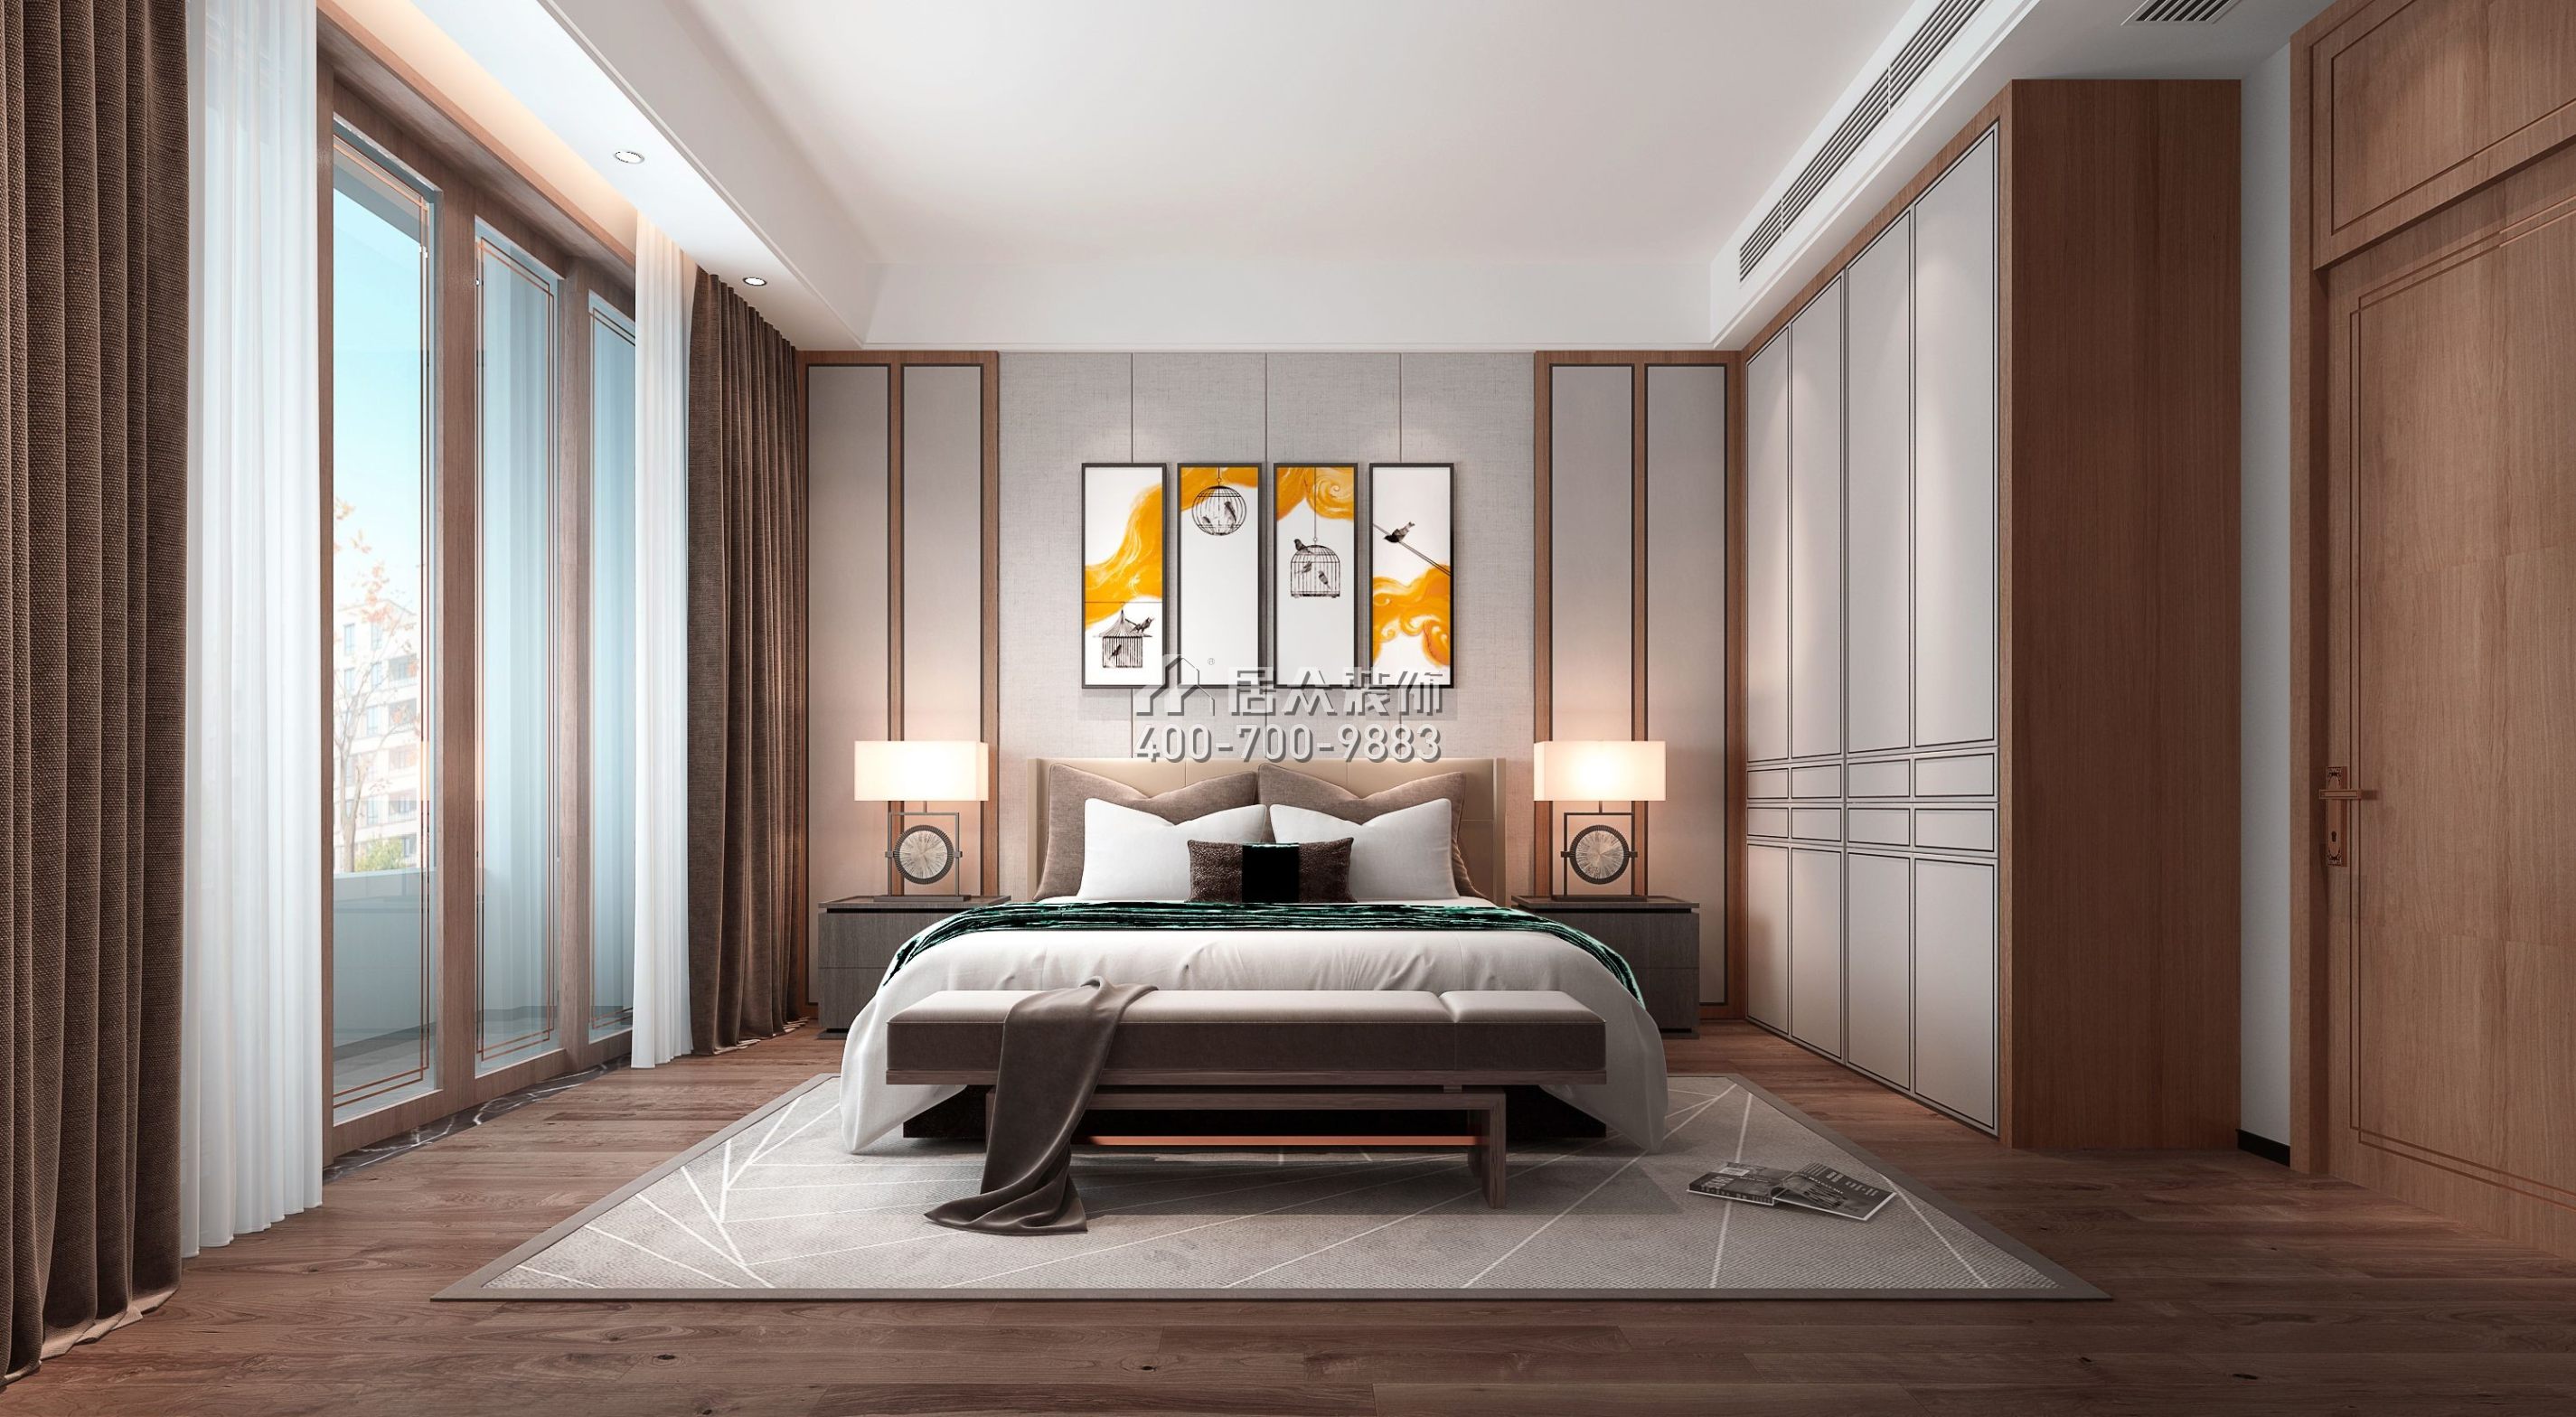 青龙湾布拉庄园400平方米中式风格别墅户型卧室装修效果图